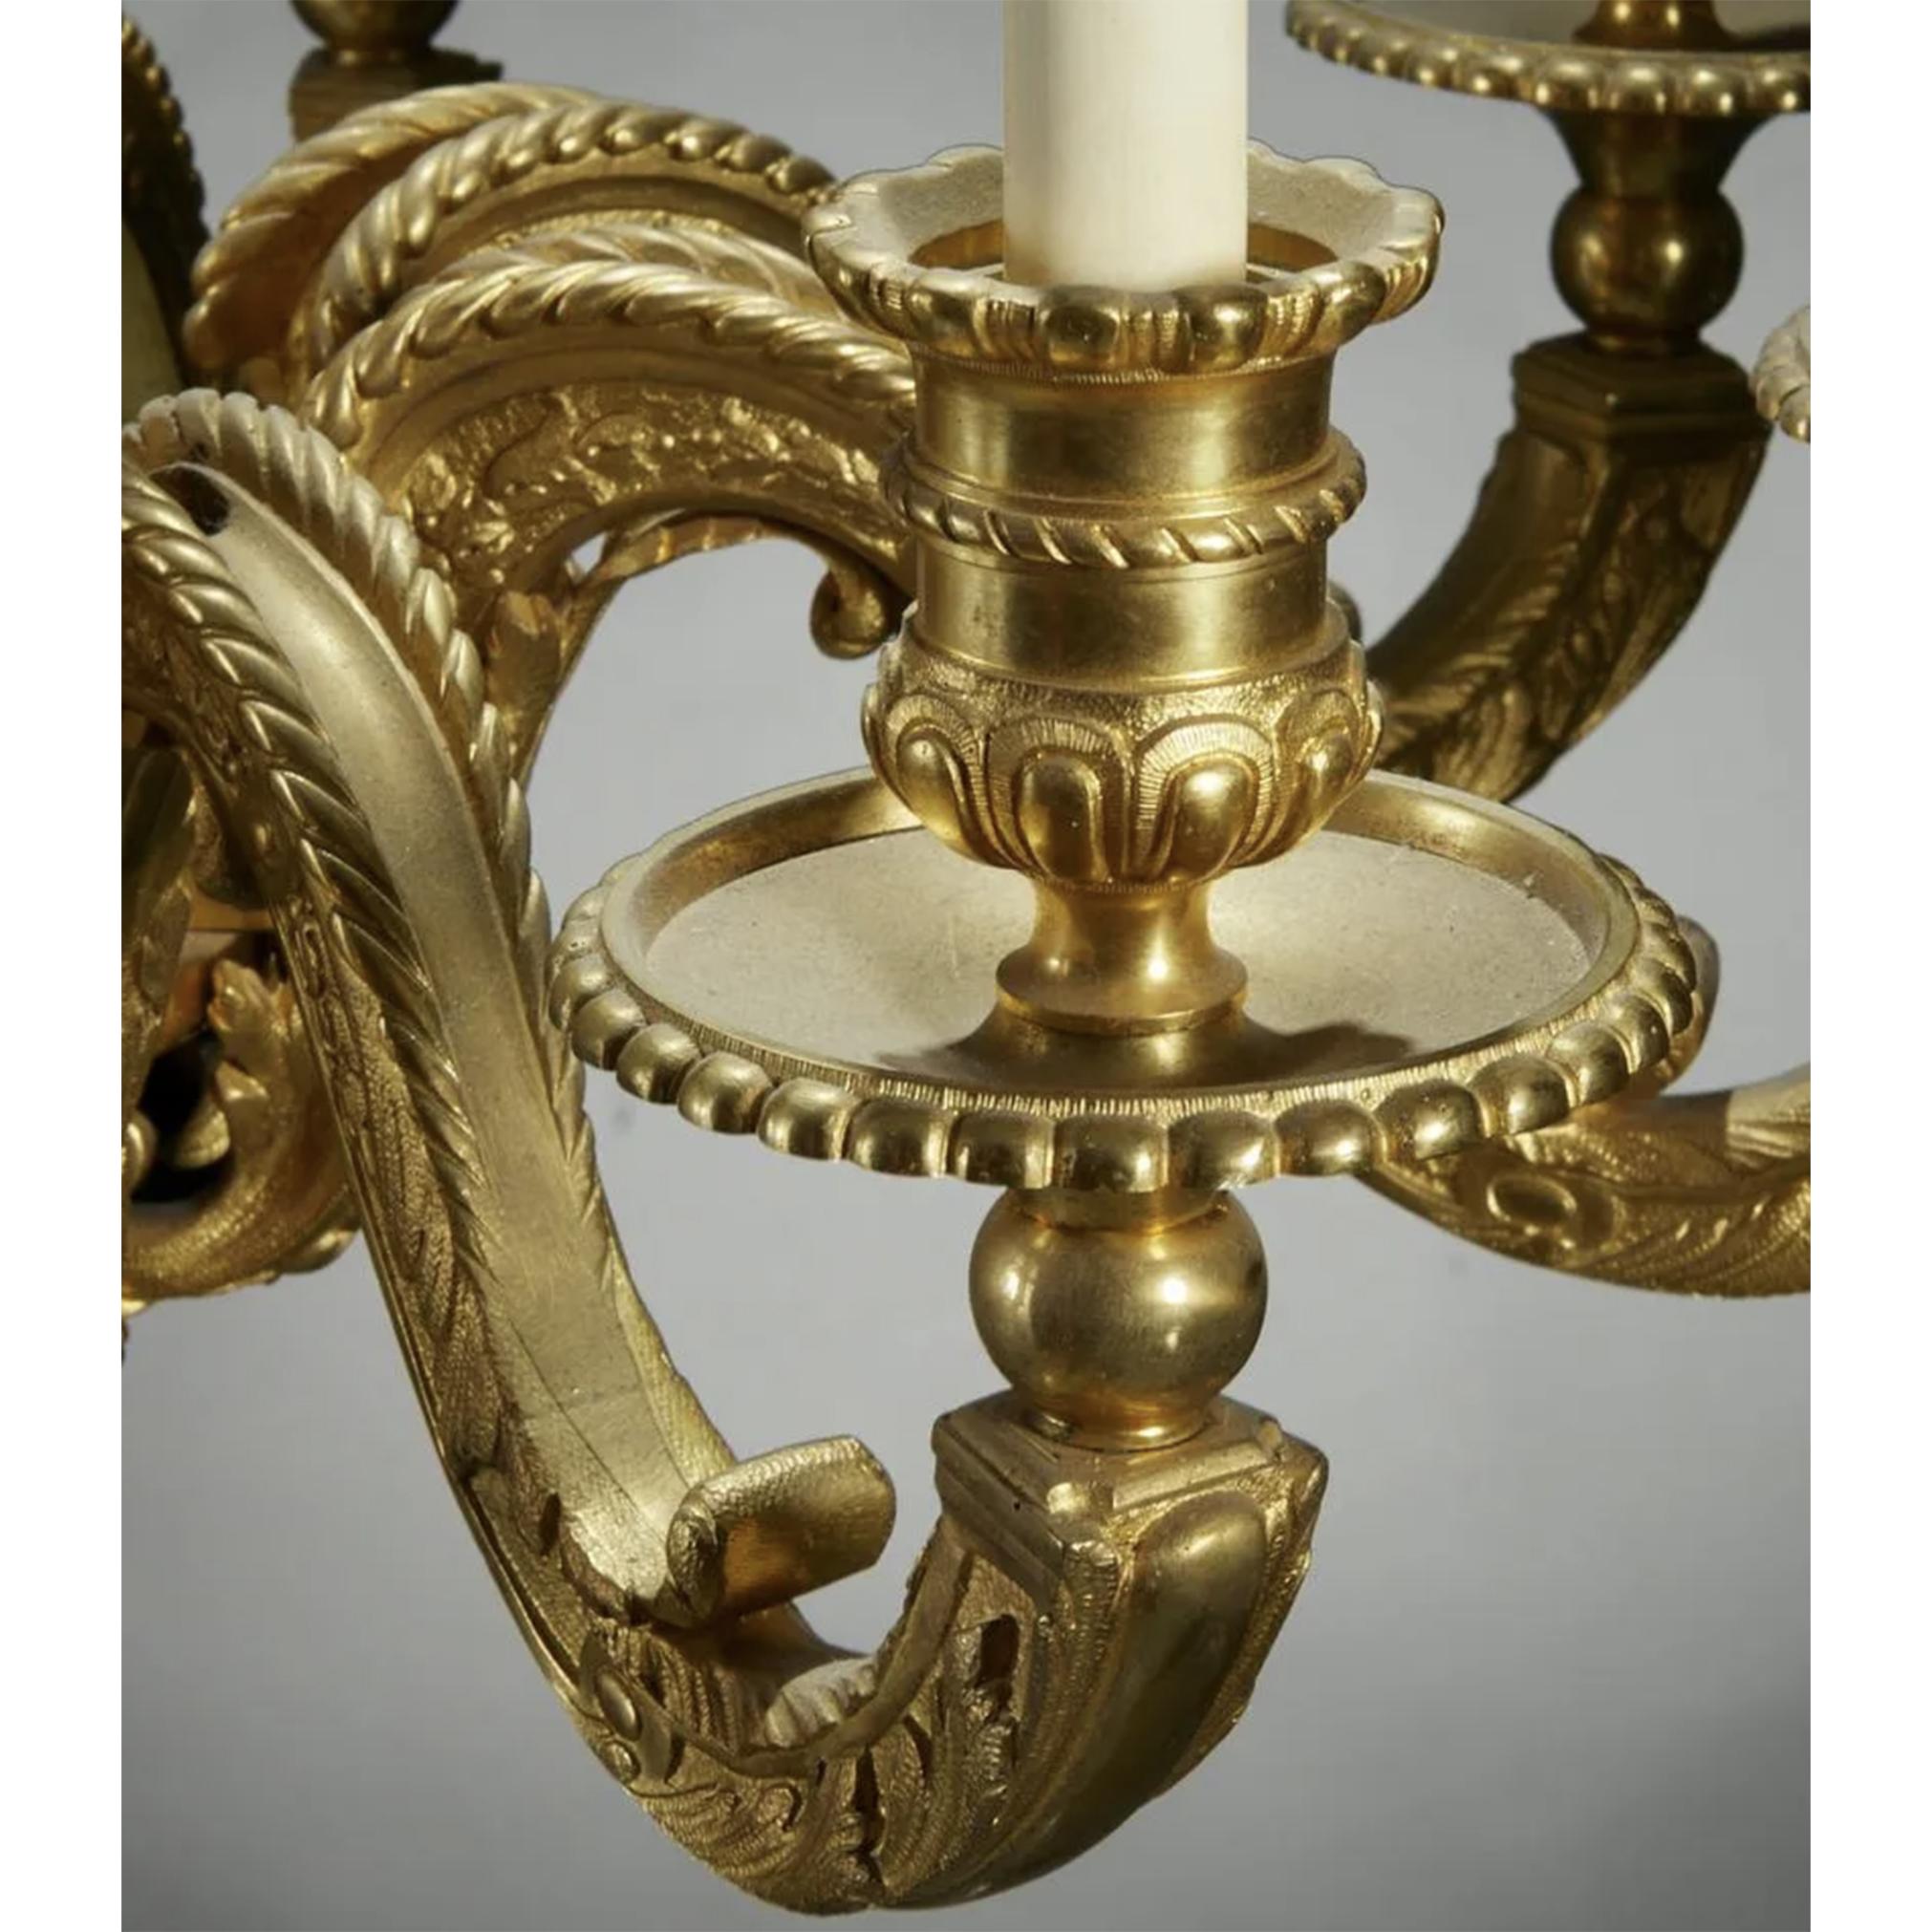 8-armiger Kronleuchter aus vergoldeter Bronze im Stil Louis XIV

Datum: Ende 19./20. Jh.

Herkunft: Frankreich

Abmessungen: 30 